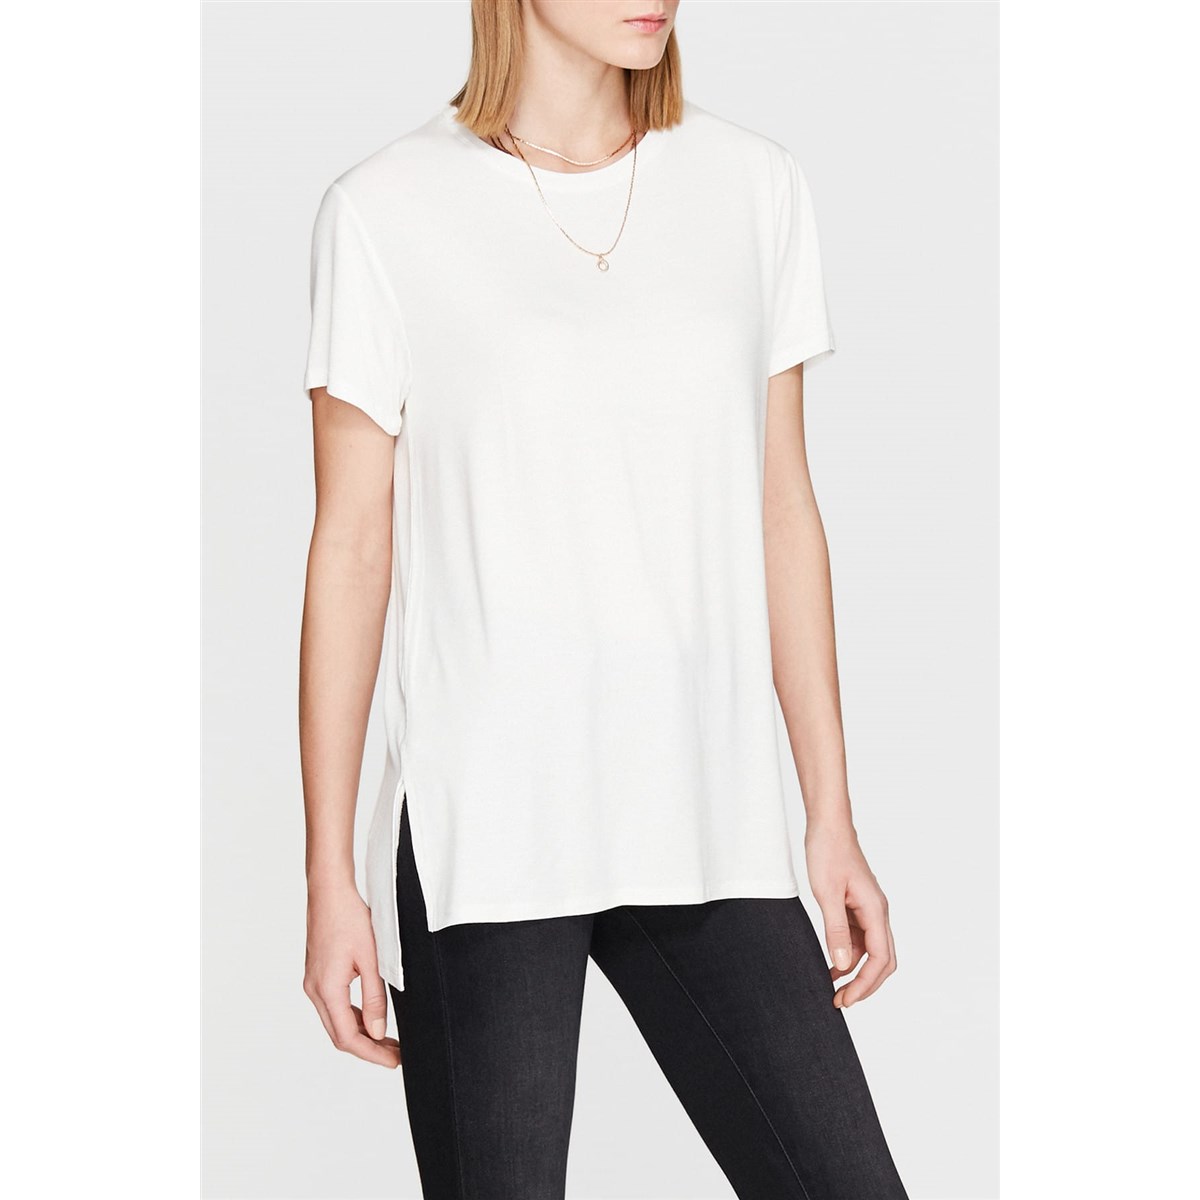 isim Kirli komplo  Mavi Kadın Yırtmaç Detaylı Beyaz Basic T-Shirt 167720-28289